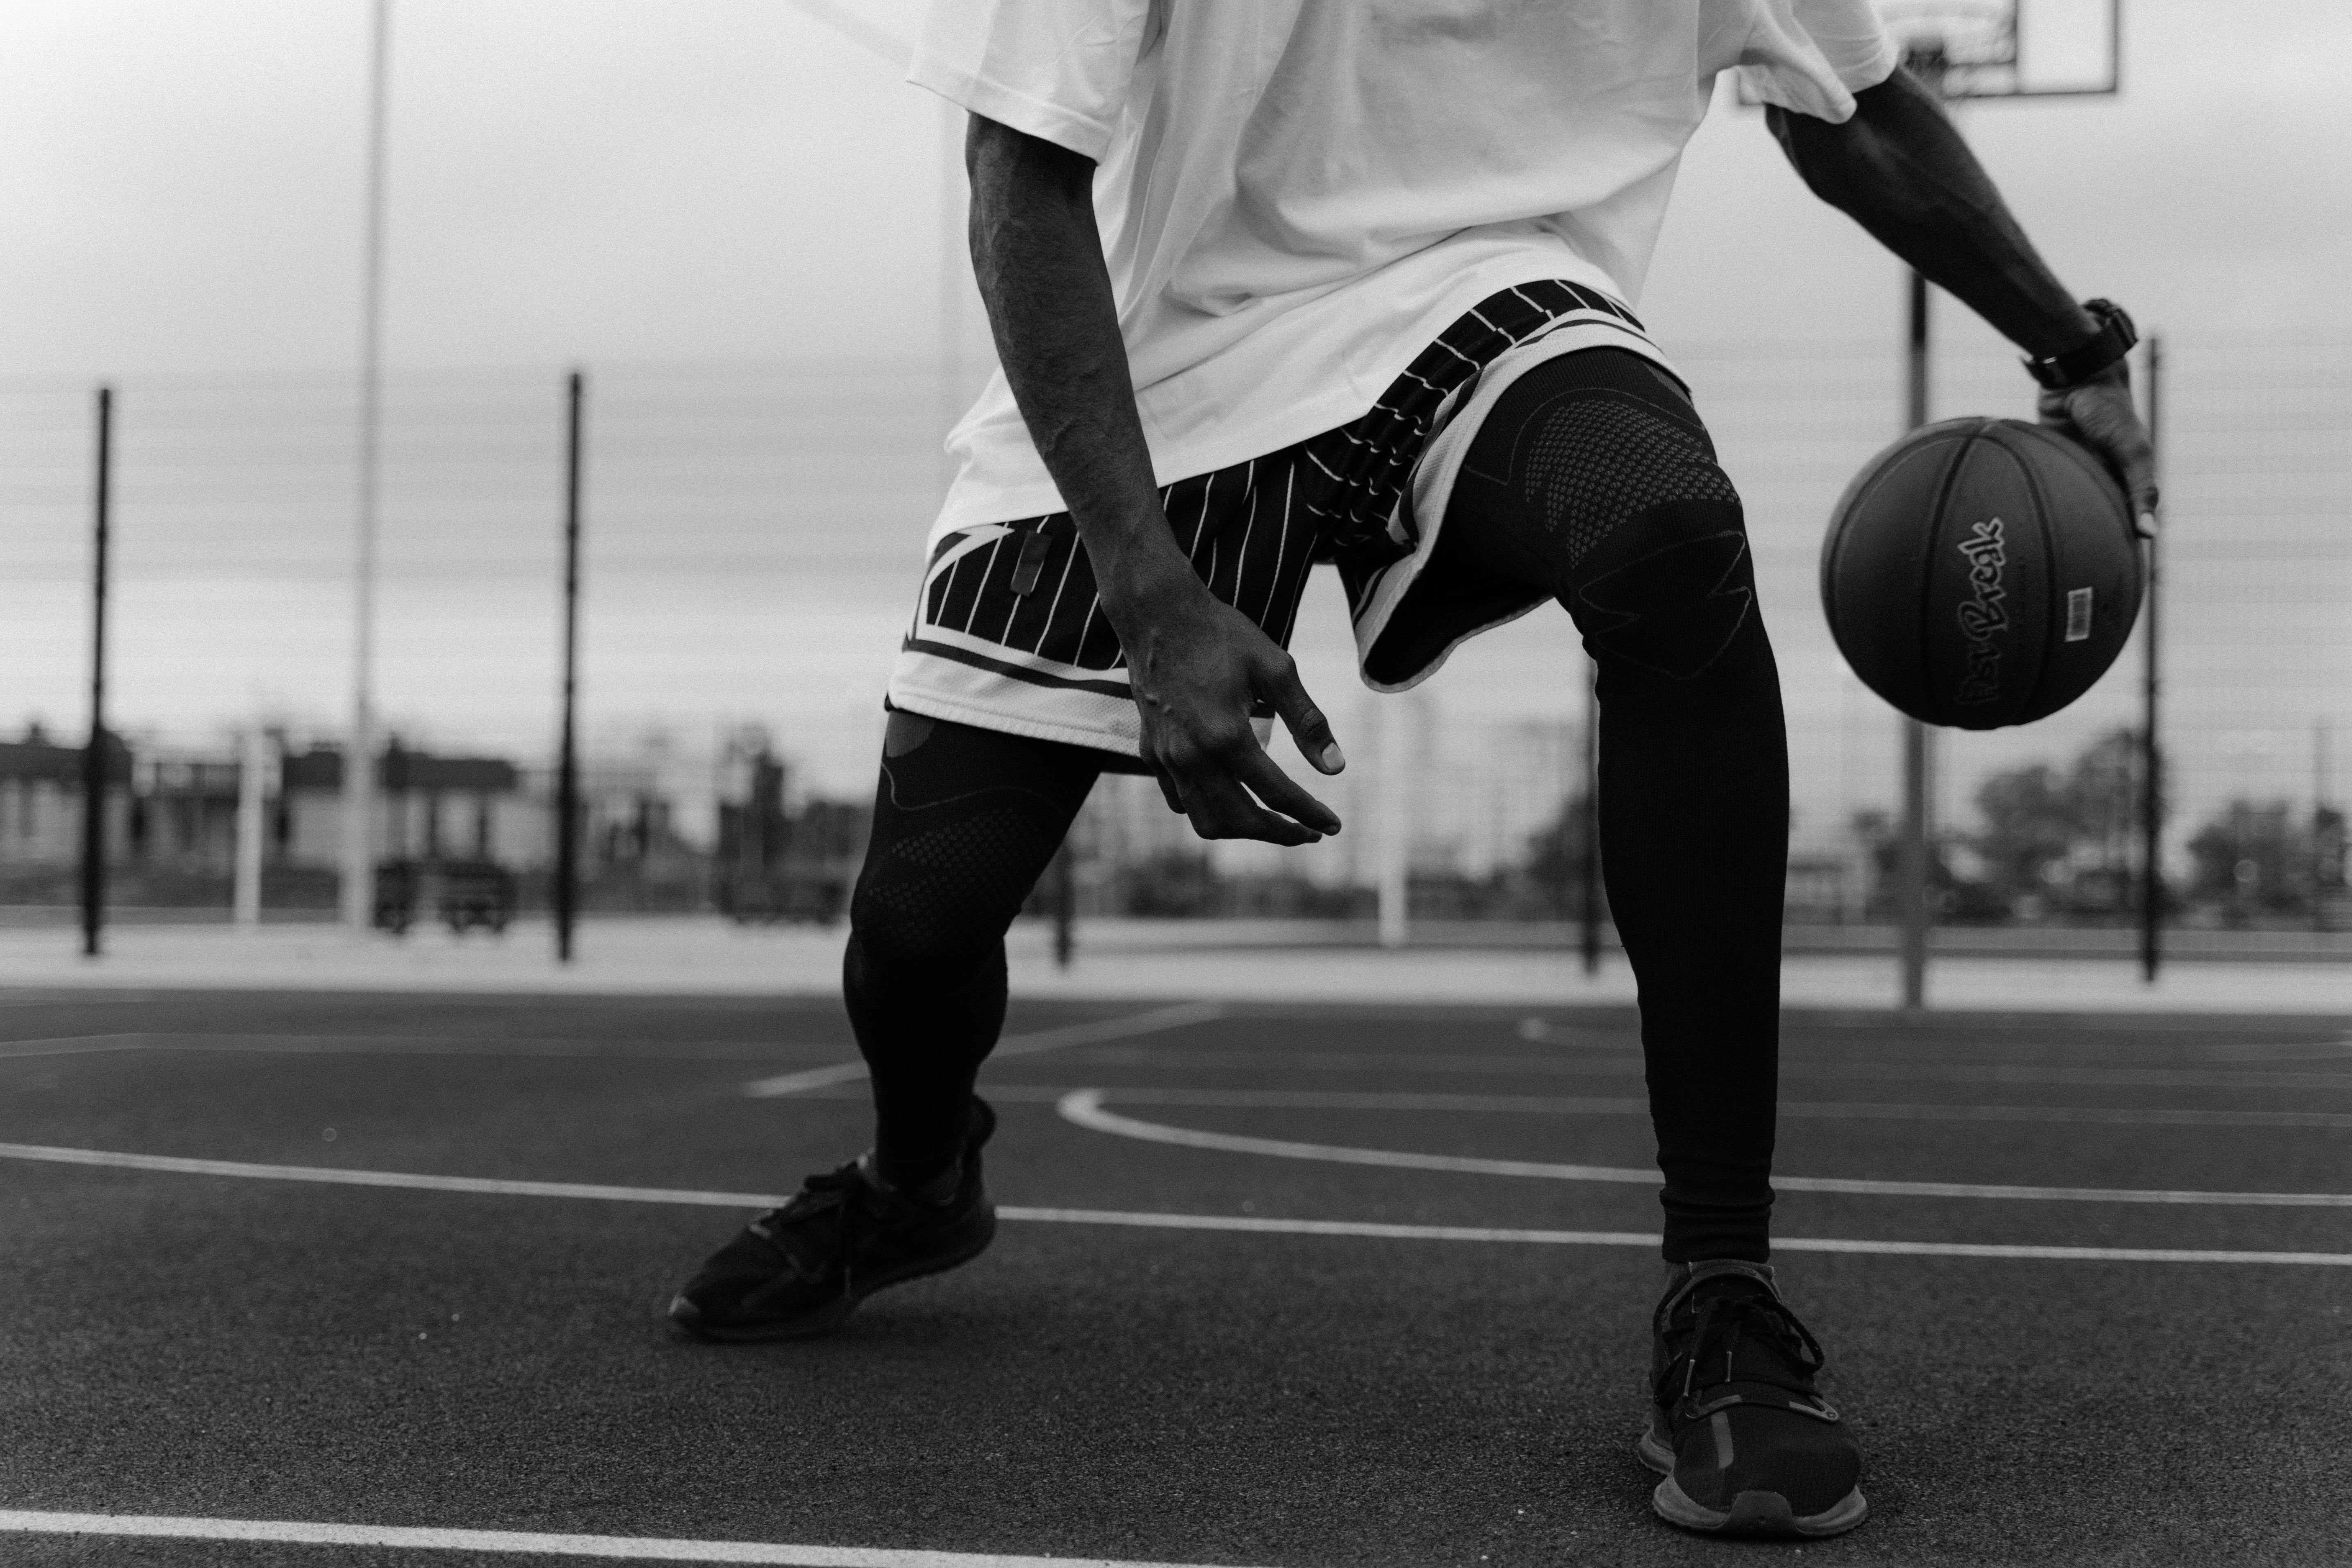 monochrome photo of man playing basketball